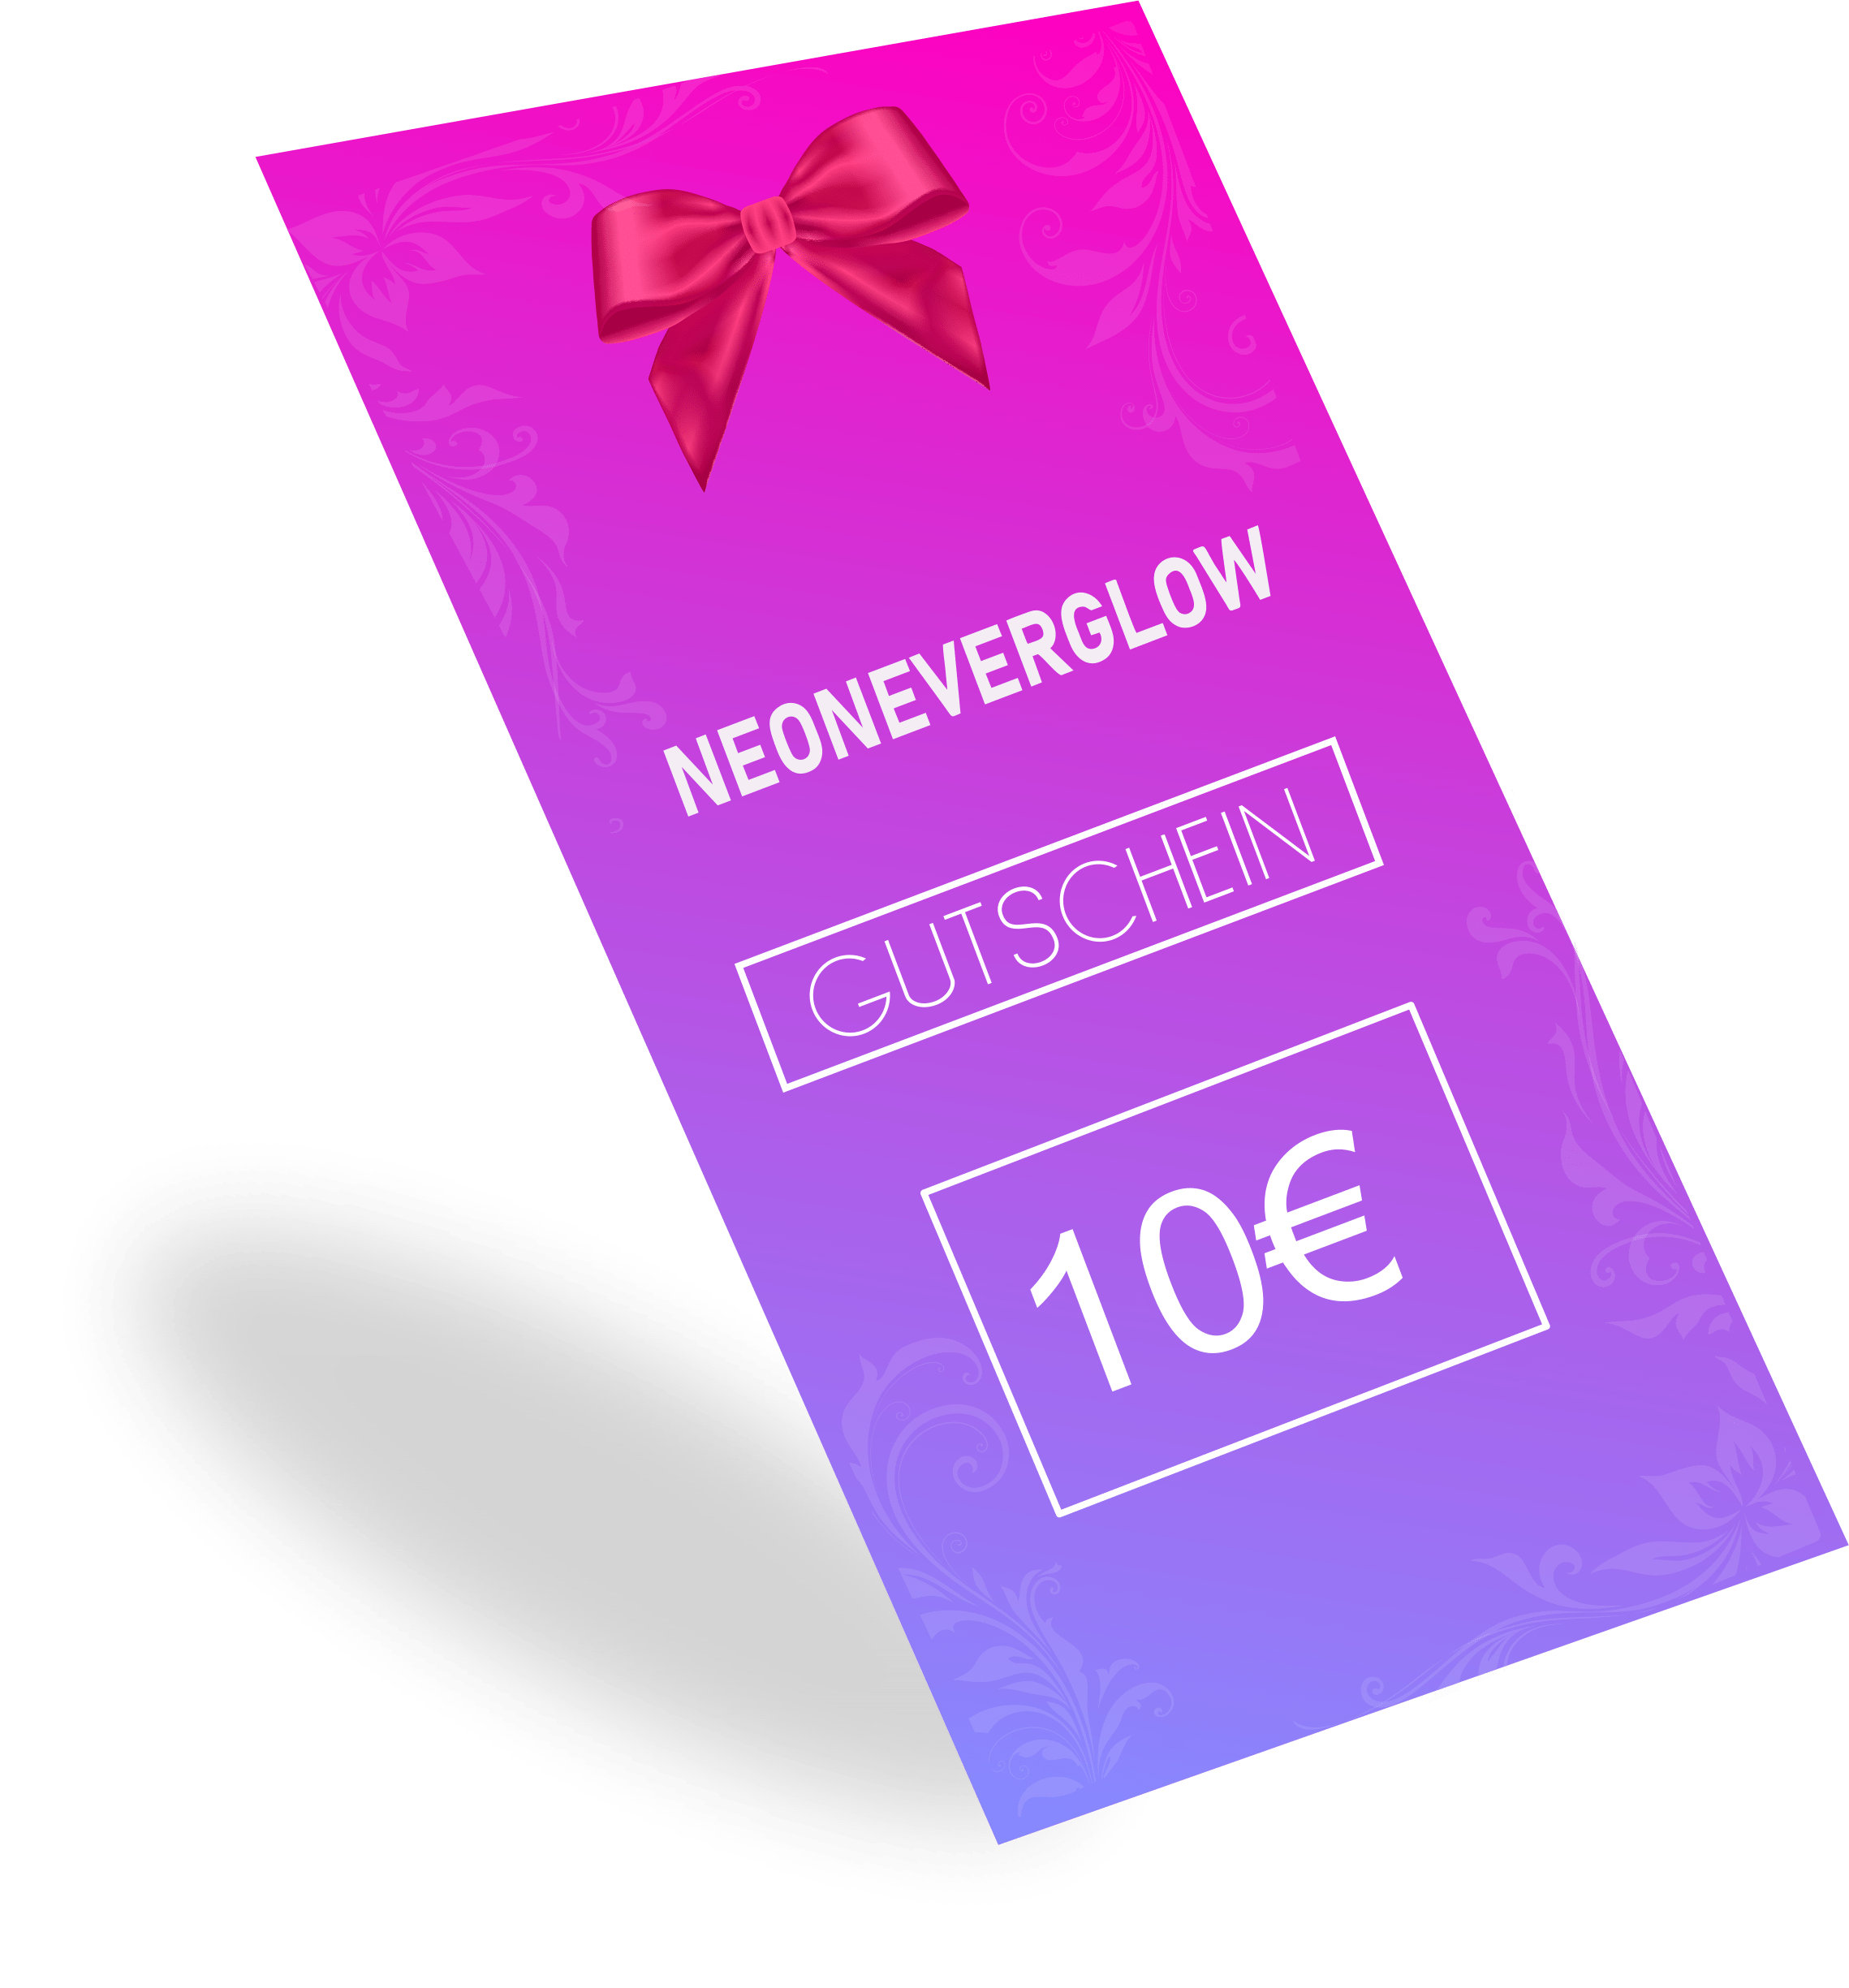 Neoneverglow -  Gutschein - NEONEVERGLOW